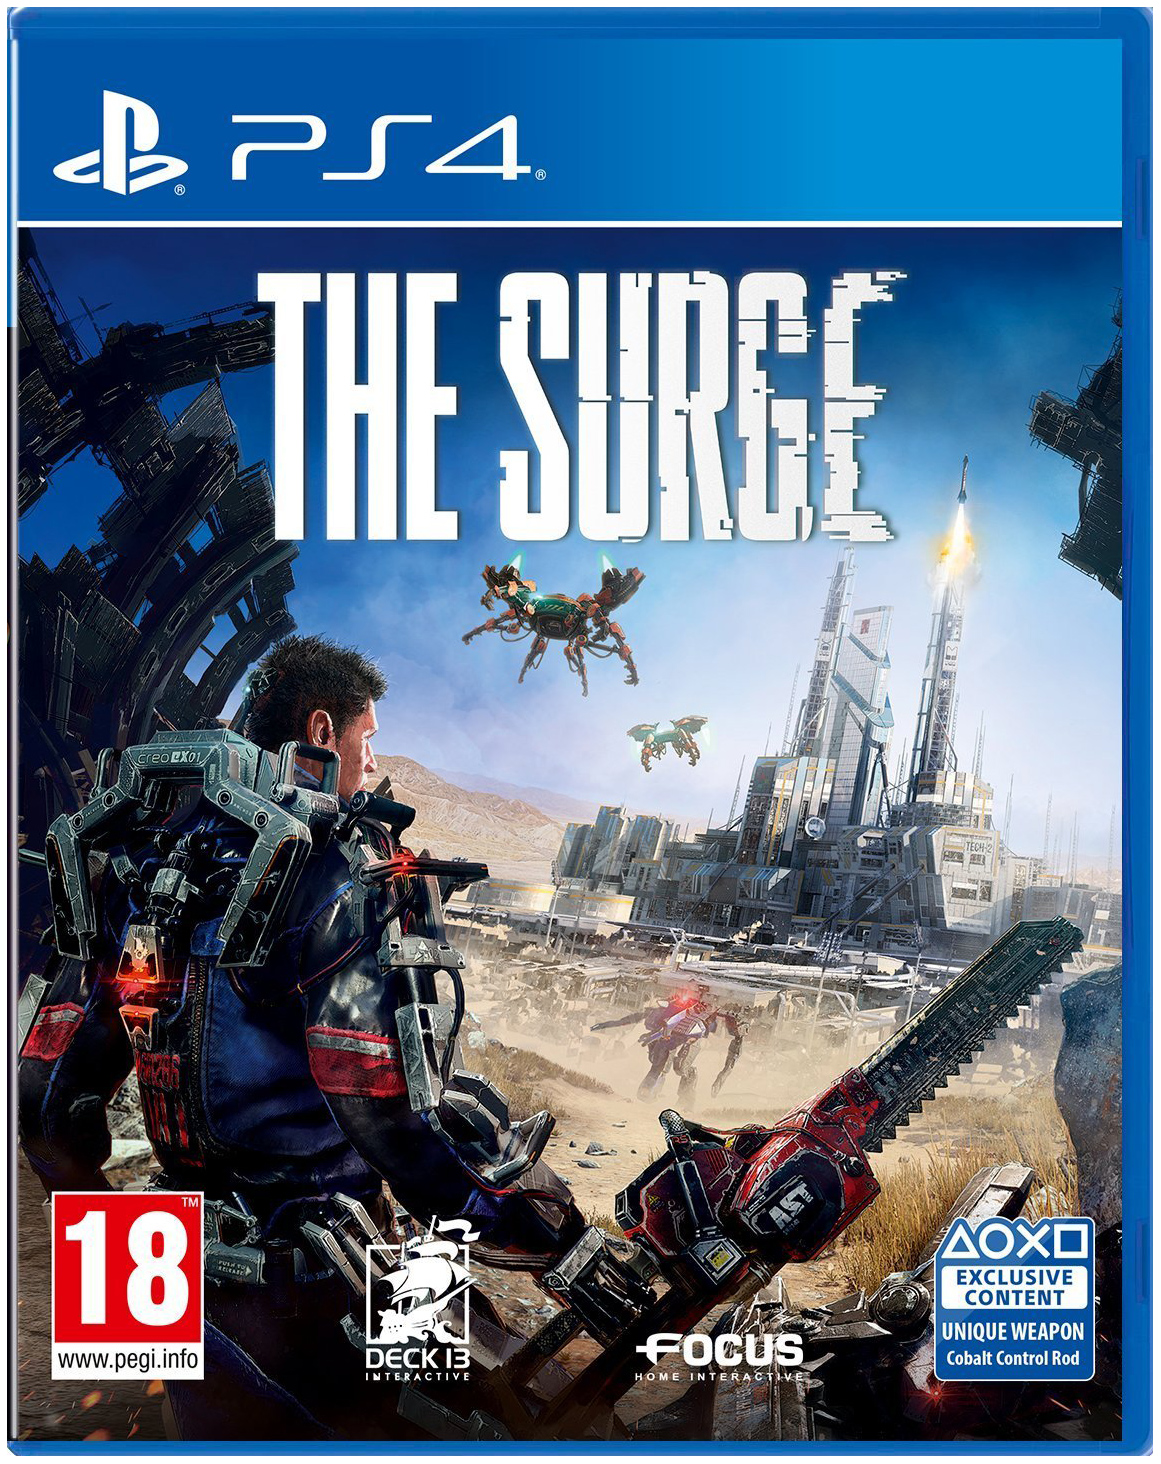 Игра The Surge для PlayStation 4